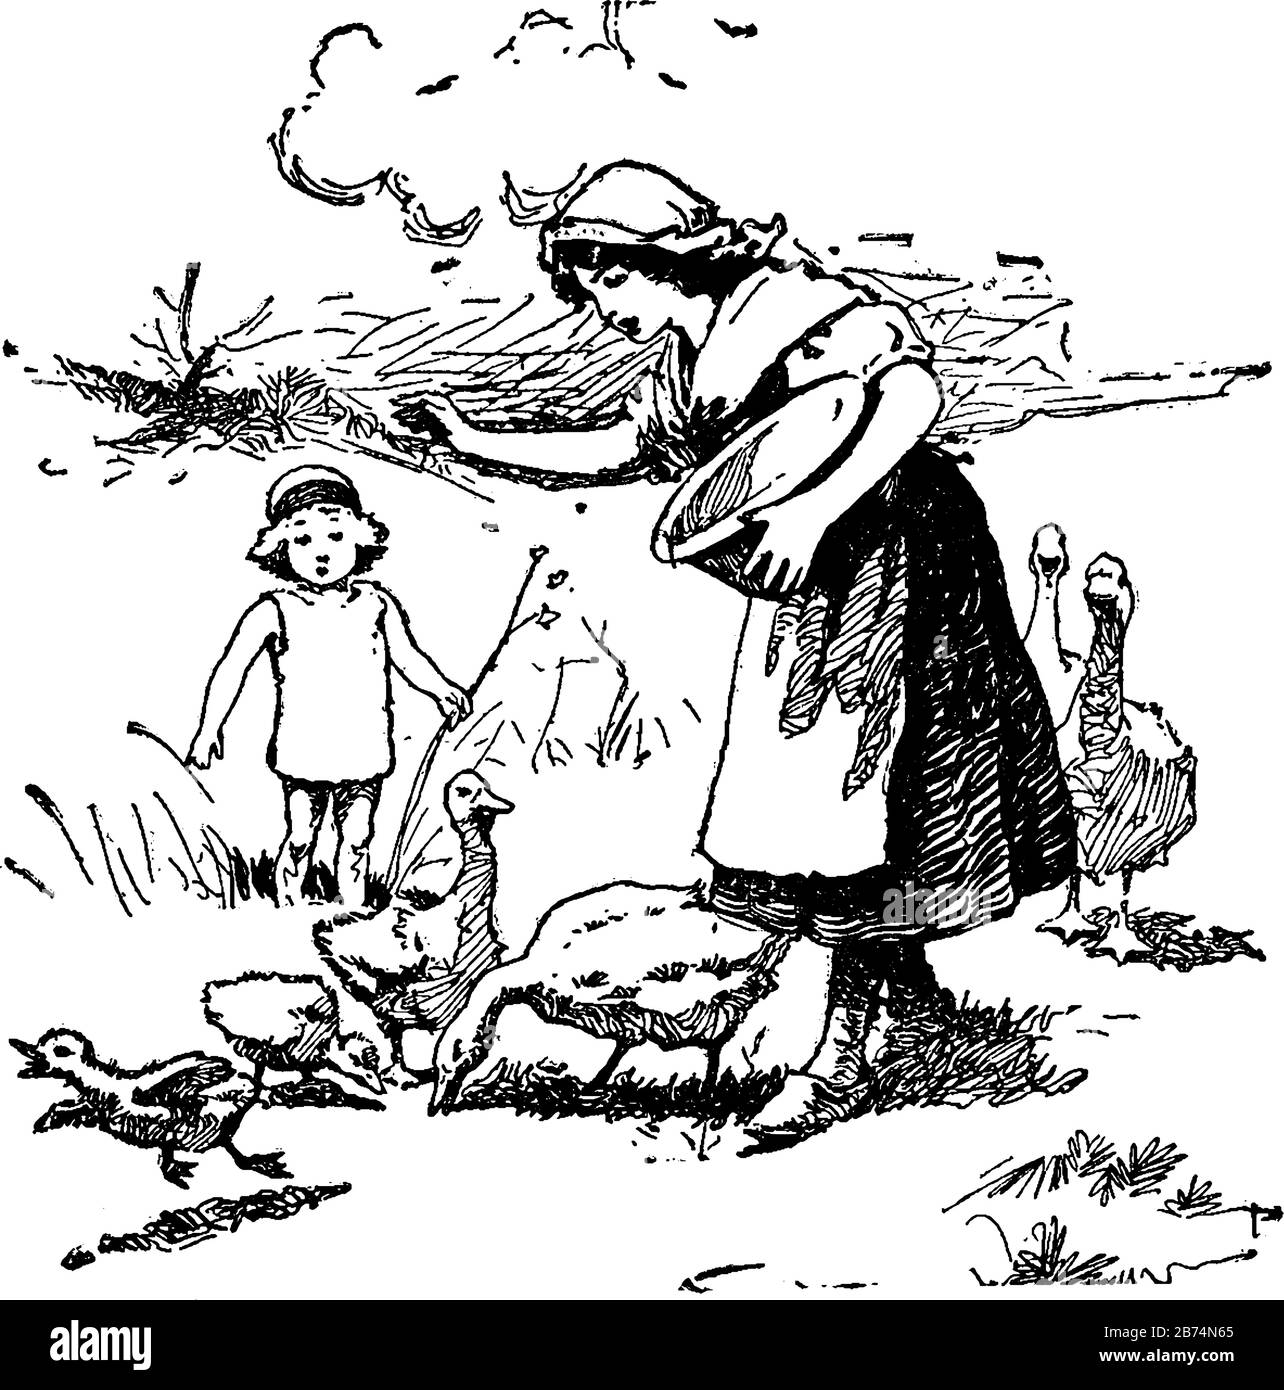 Une femme nourrissant des canards et tenant la cuvette, un enfant debout près d'elle, dessin vintage de ligne ou illustration de gravure Illustration de Vecteur